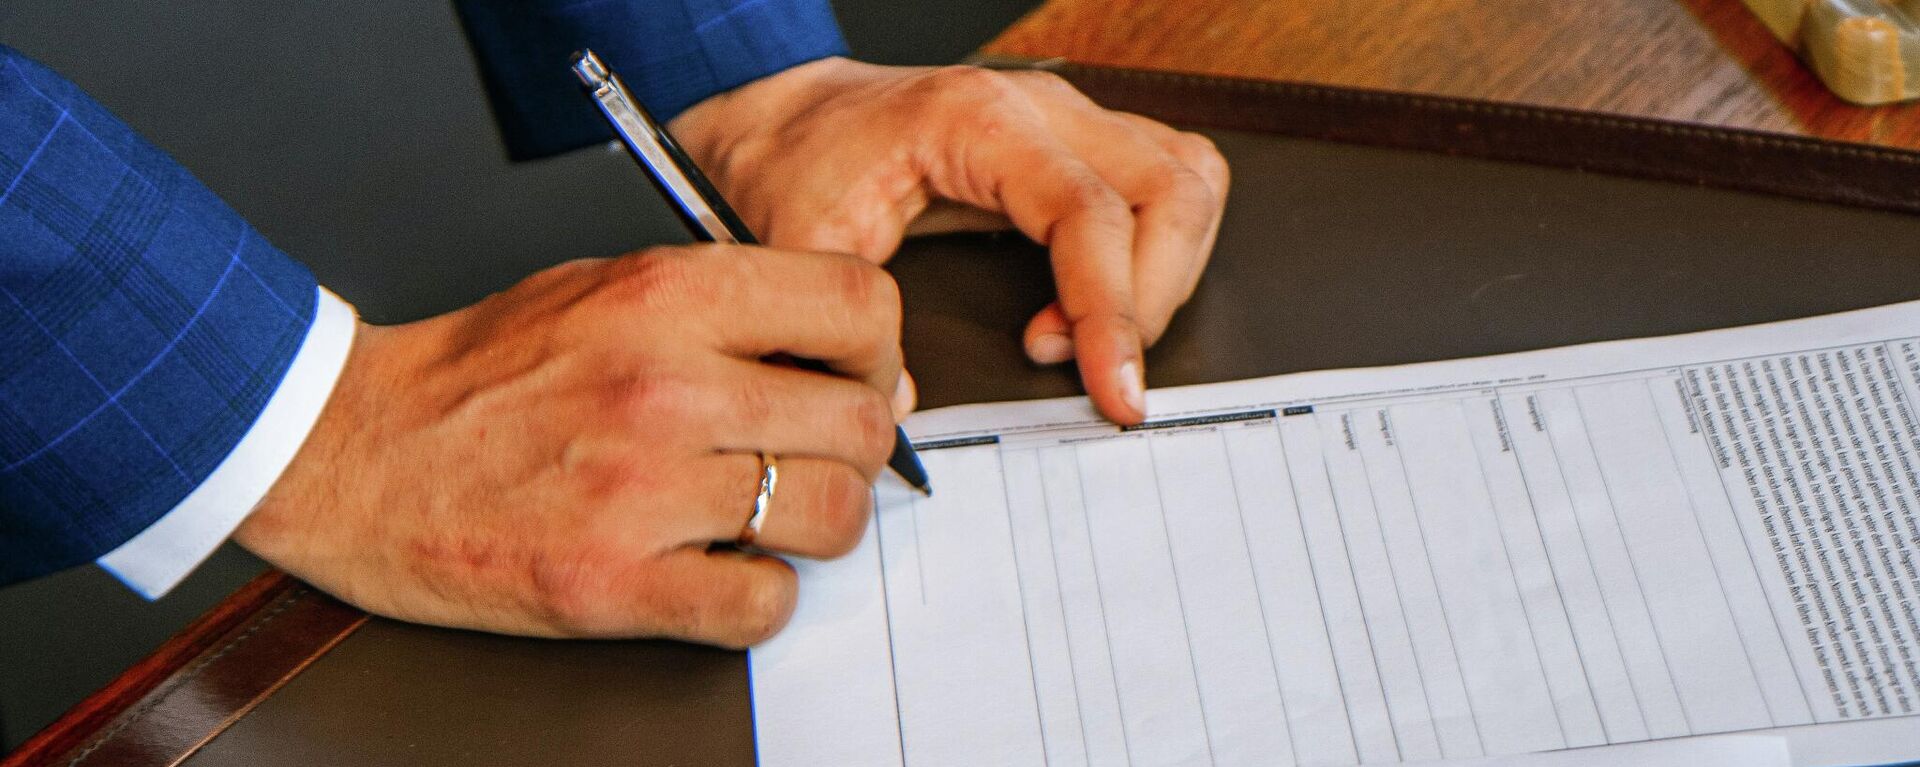 Мужчина подписывает документы. Иллюстративное фото - Sputnik Узбекистан, 1920, 09.06.2021